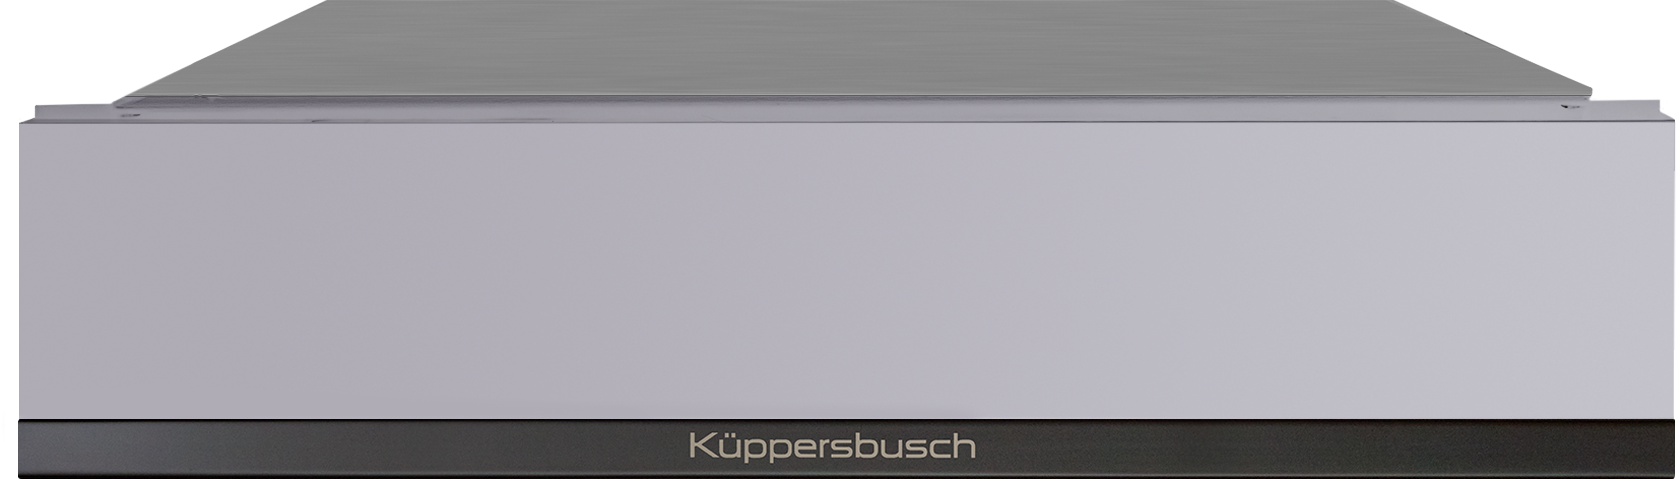 Kuppersbusch CSV 6800.0 G2 - фотография № 3